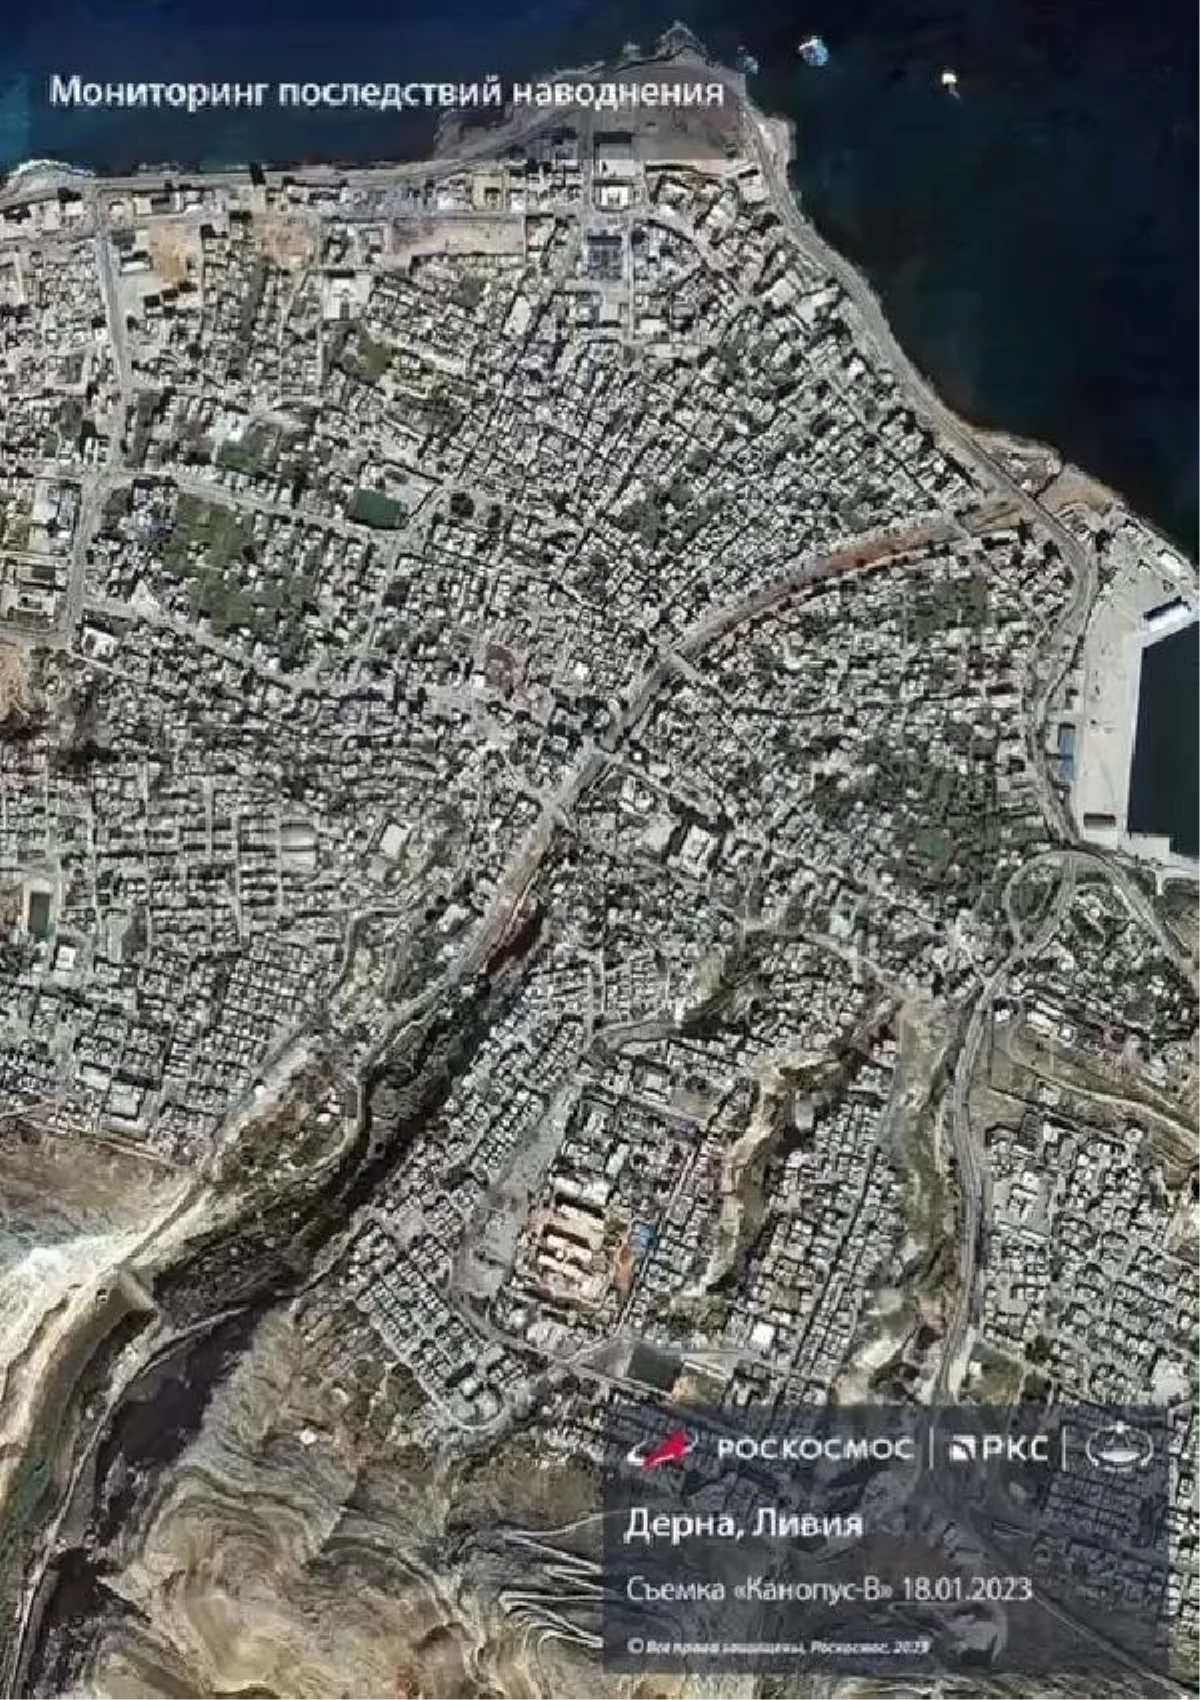 Libya\'nın Derne Kentindeki Sel Felaketi Uydu Görüntüleriyle Ortaya Konuldu